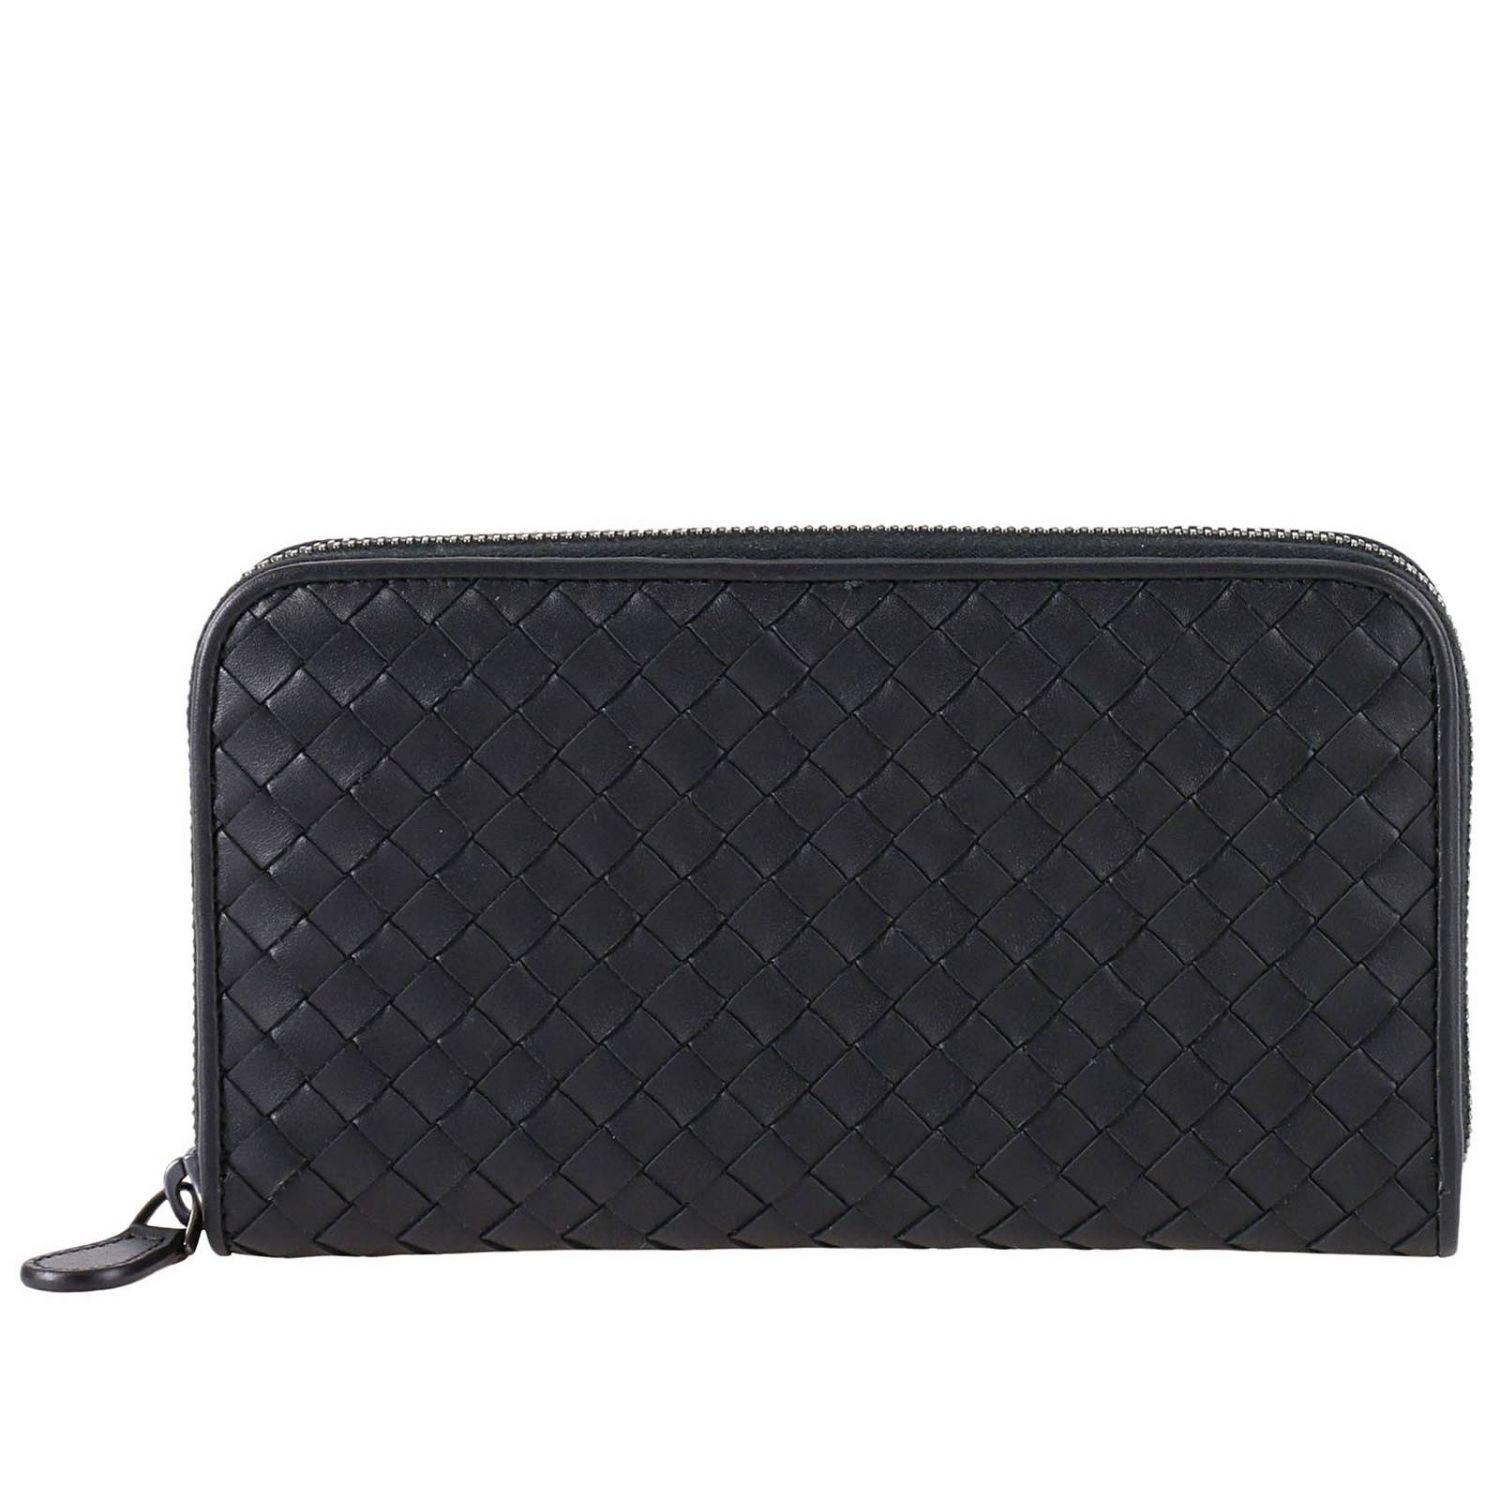 Bottega Veneta Leather Men's Wallet in Black for Men - Lyst